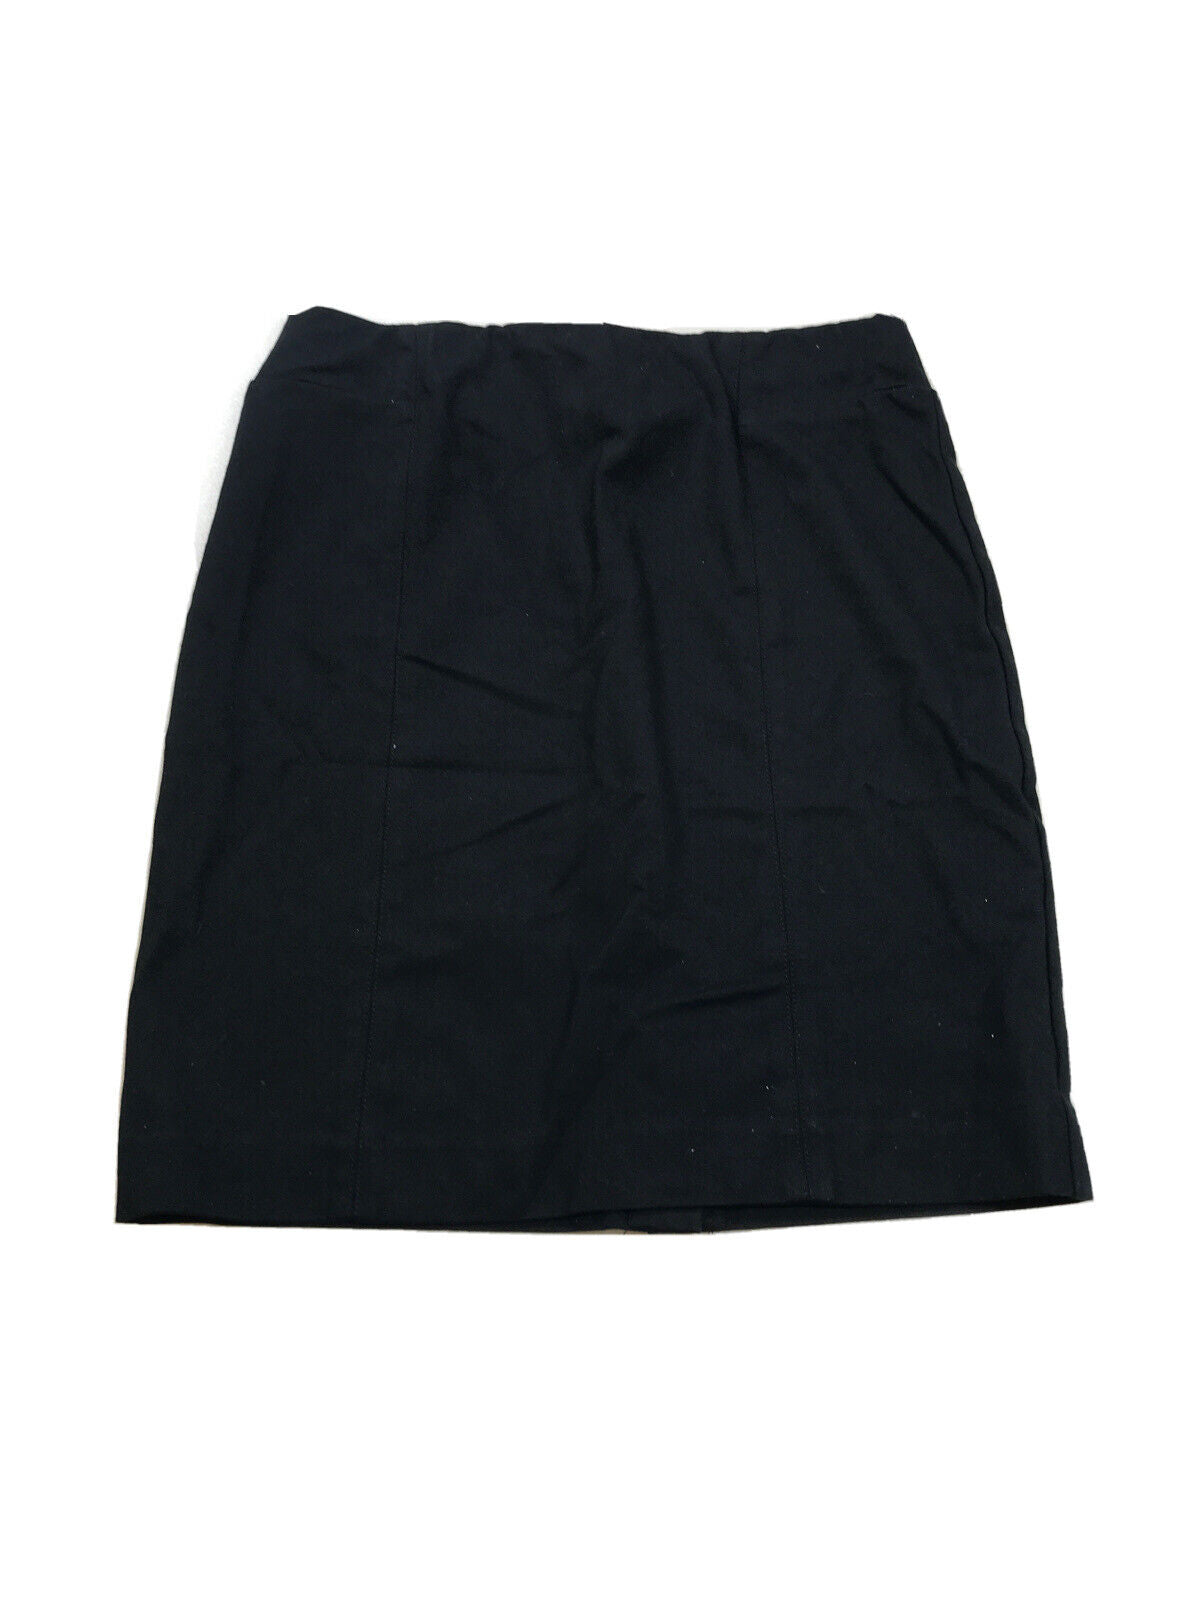 J. Jill Women's Black Cotton Ponte Stretch Pencil Skirt - XS